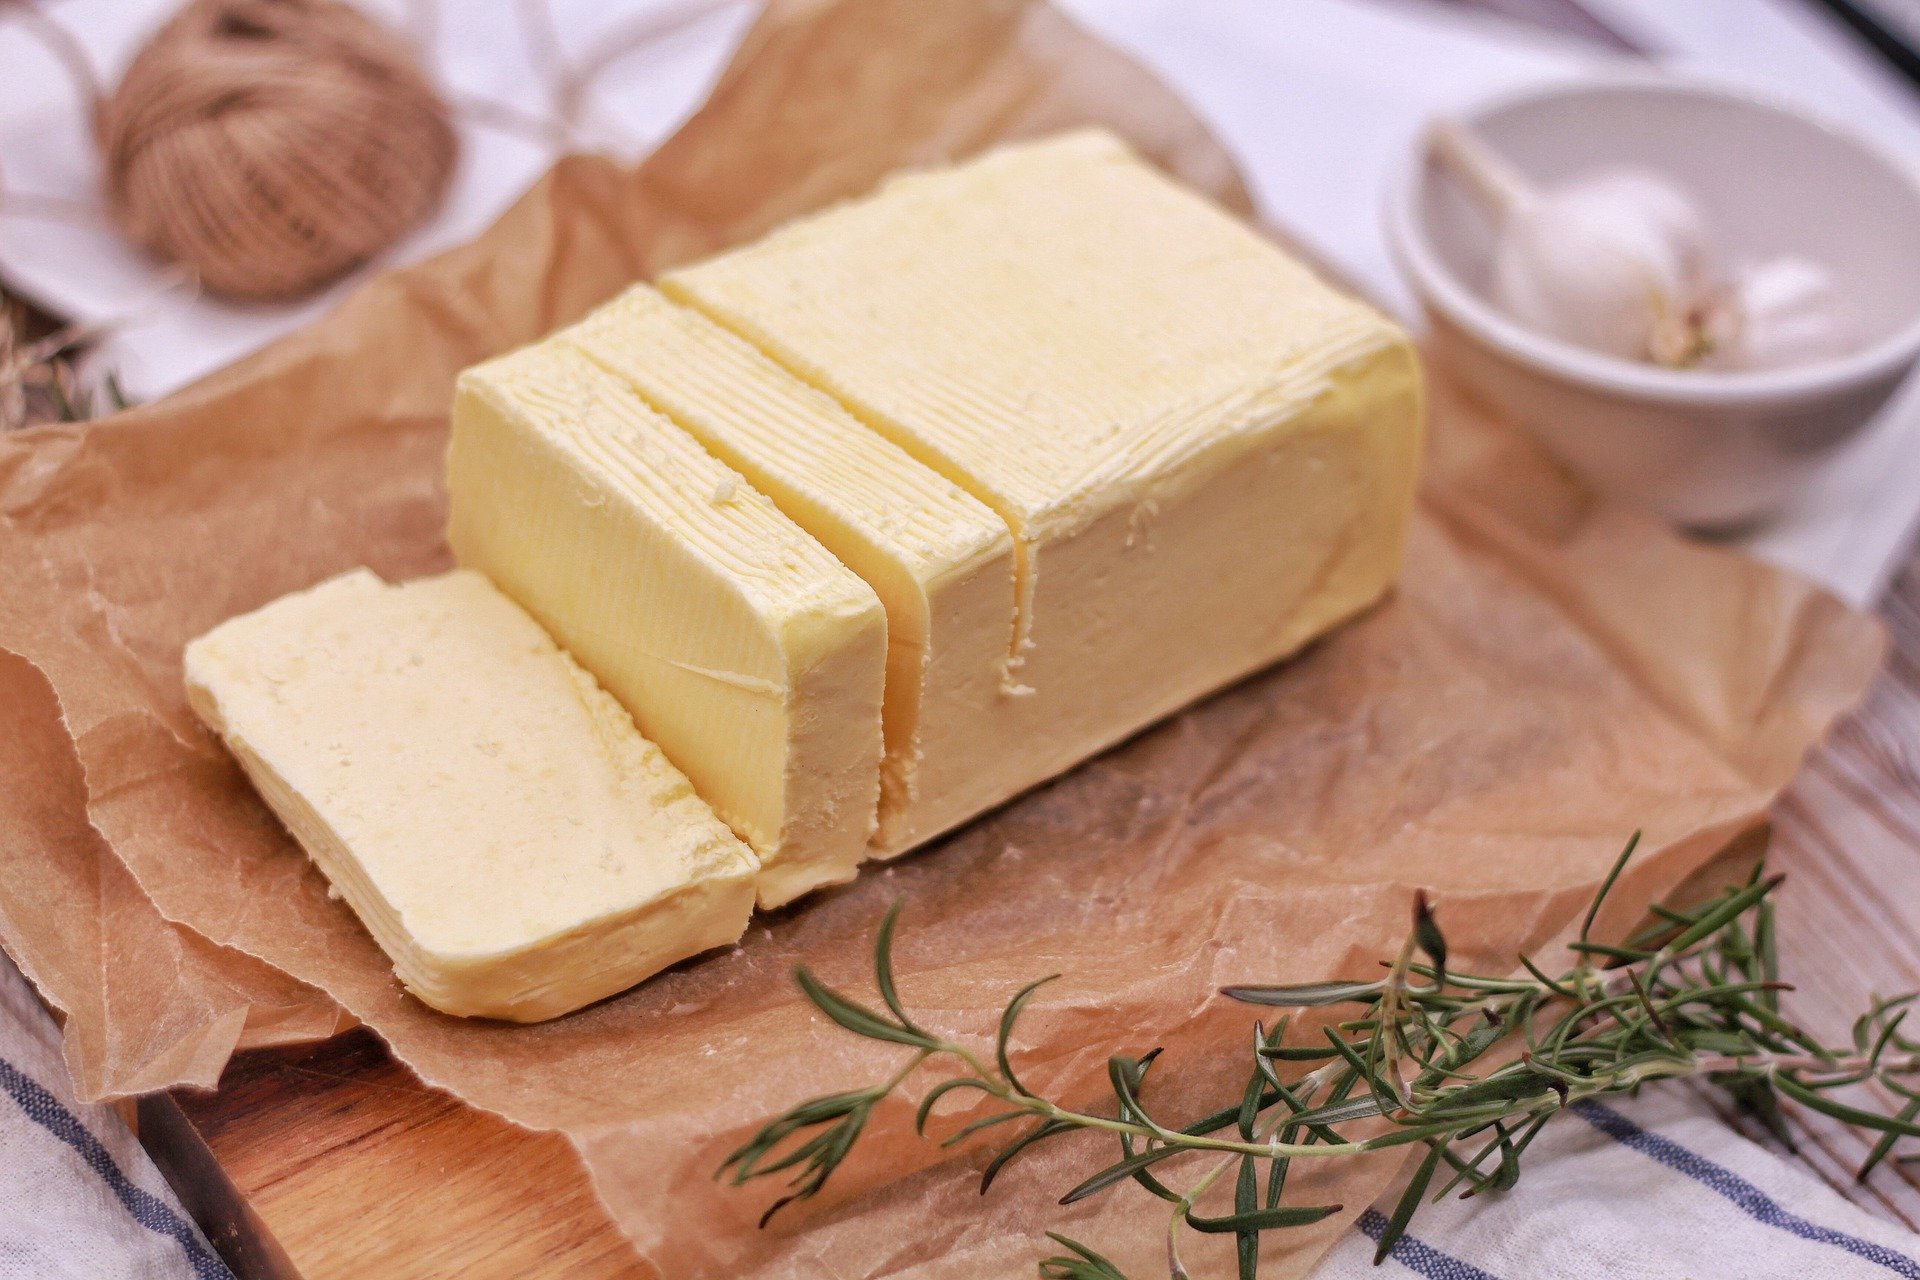 発酵バターと普通のバターは何が違う 知って得する乳酸菌の働きとは E レシピ 料理のプロが作る簡単レシピ 1 1ページ